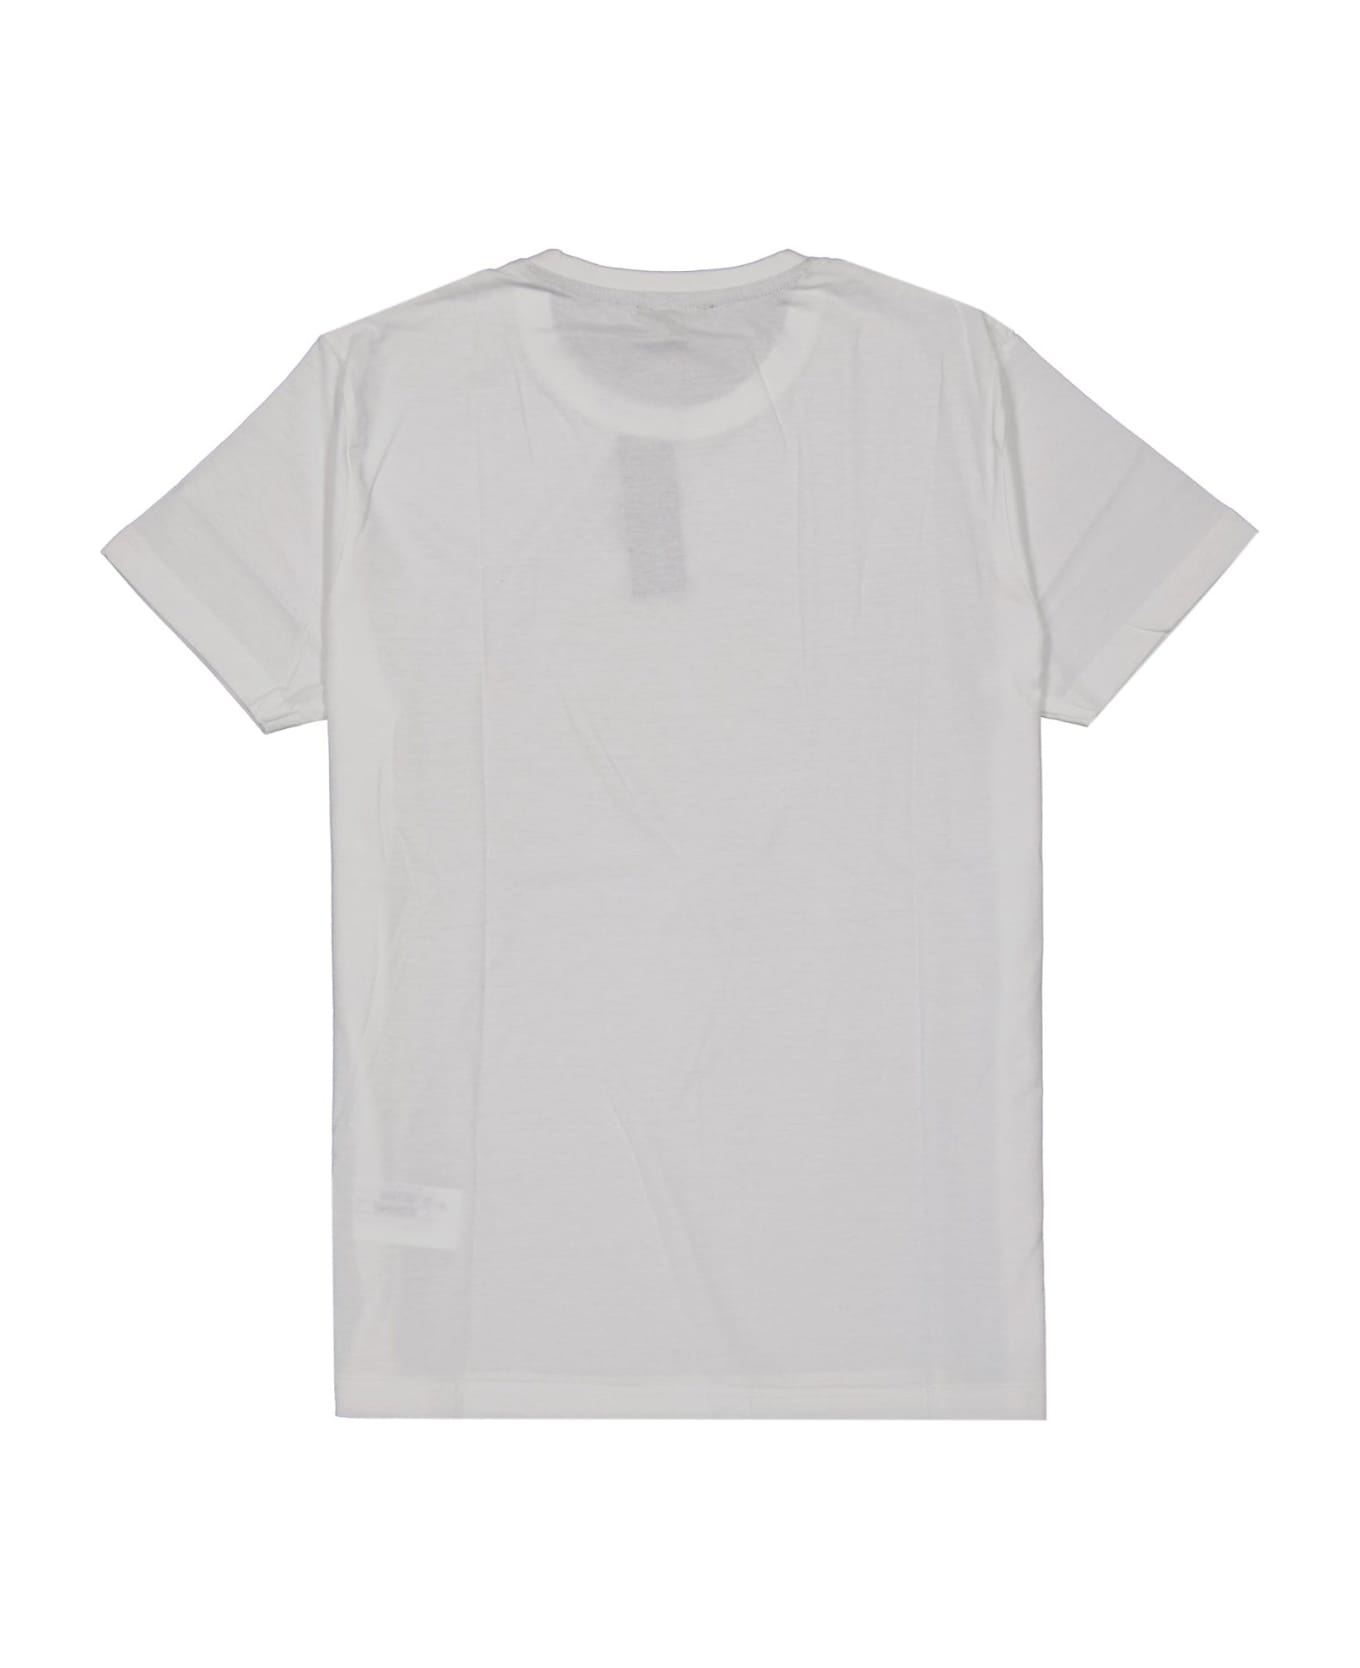 Cesare Paciotti Cotton T-shirt - White シャツ